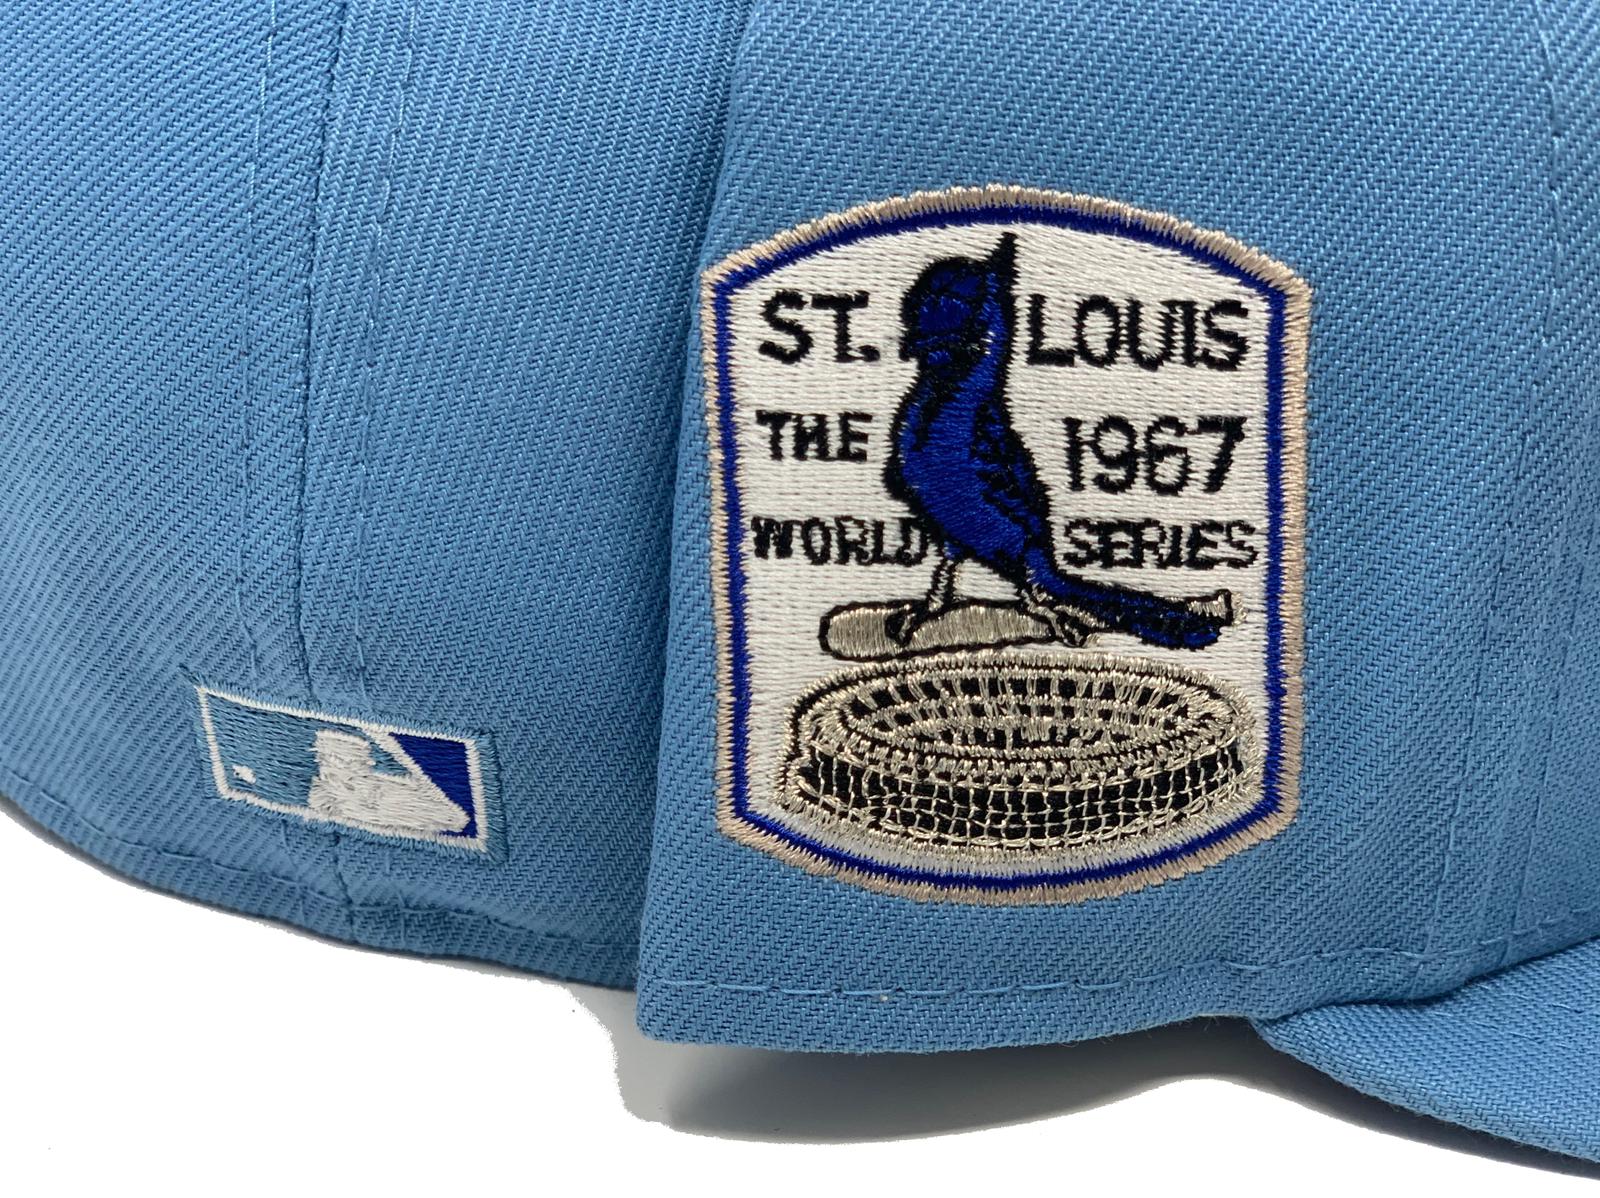 Mens St. Louis Cardinals Mlb Baseball Team Alternate Light Blue Jersey Gift  For Cardinals Fans - Bluefink